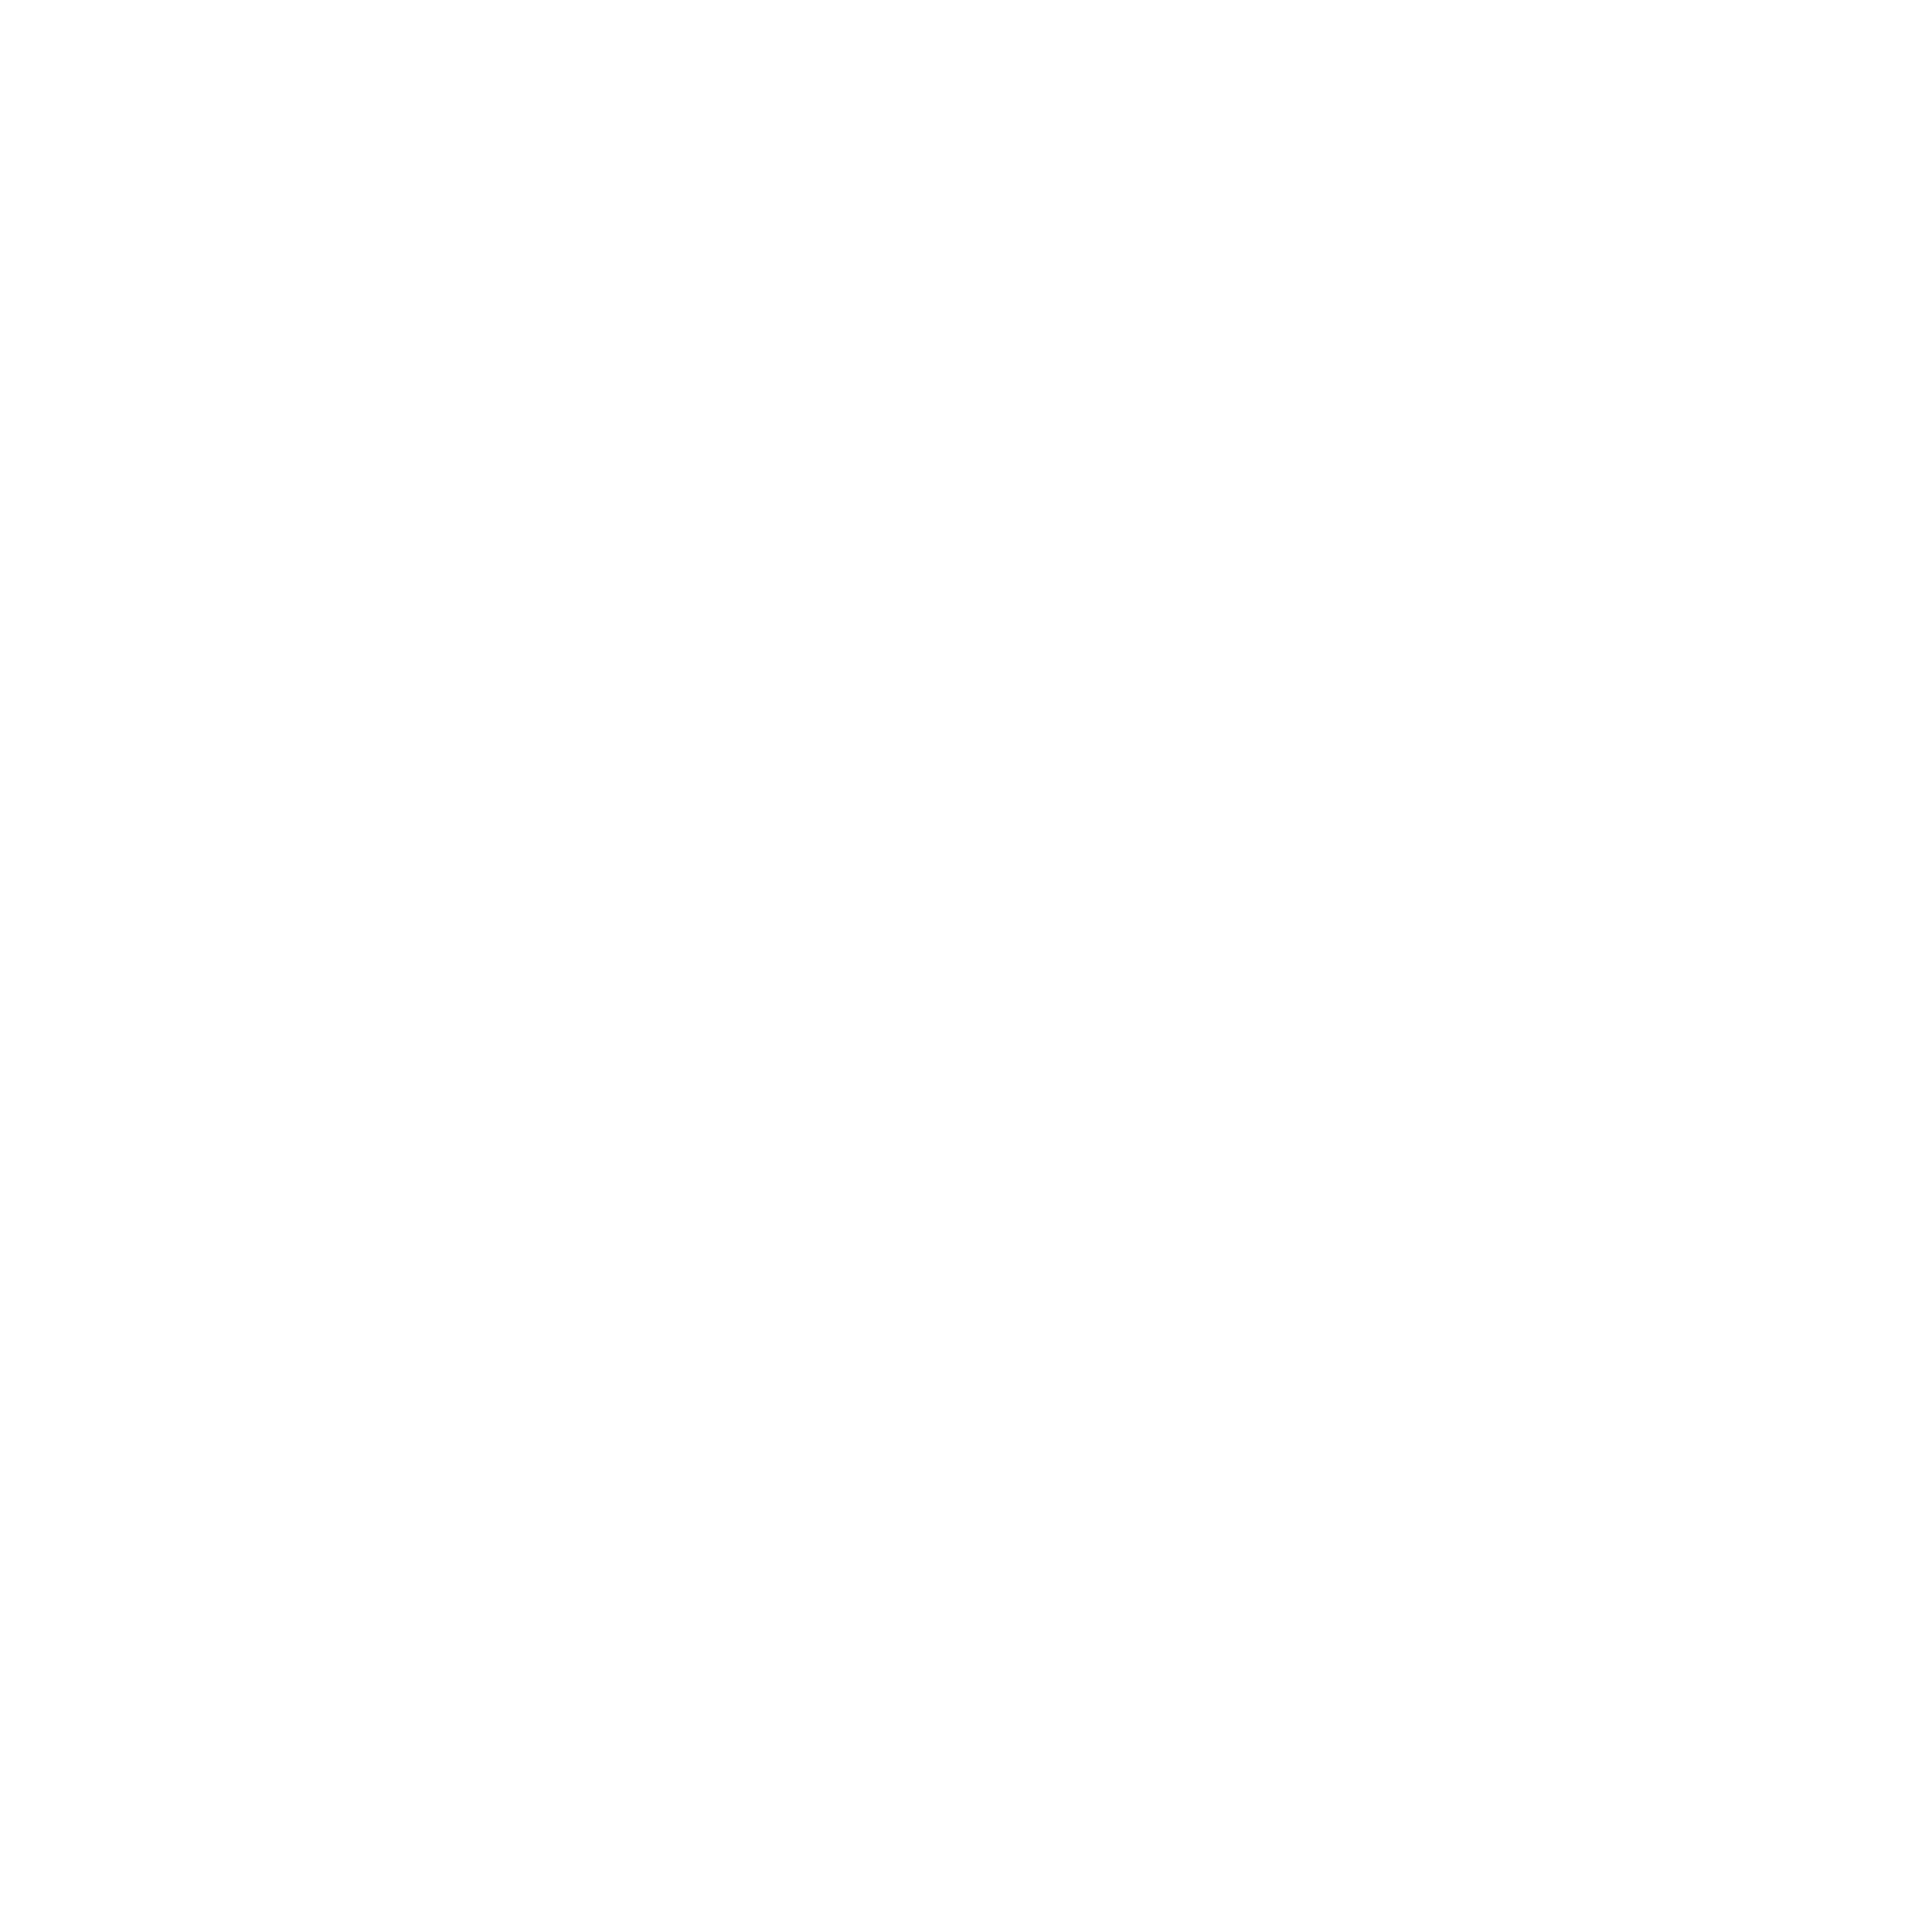 XPMTL_LOGO_OFFICIEL.png (Copy) (Copy)